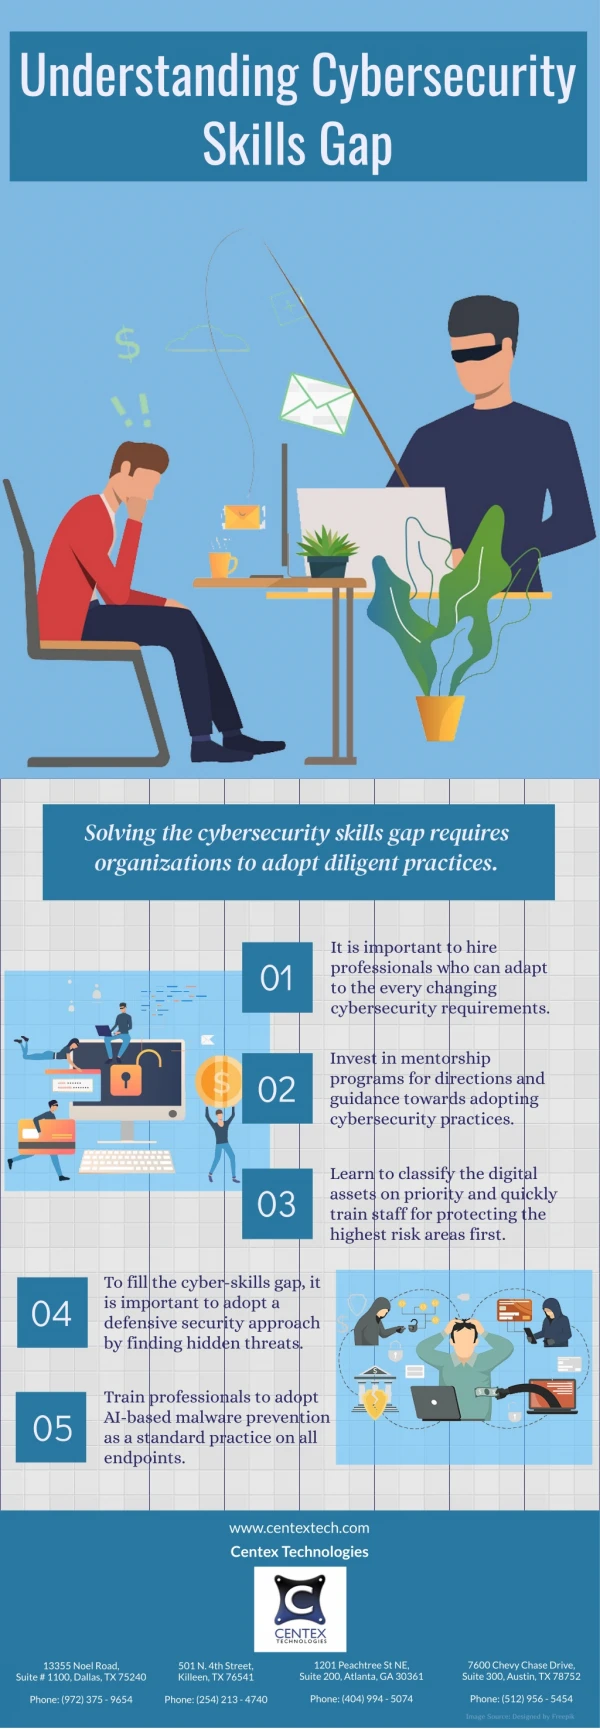 Understanding Cybersecurity Skills Gap